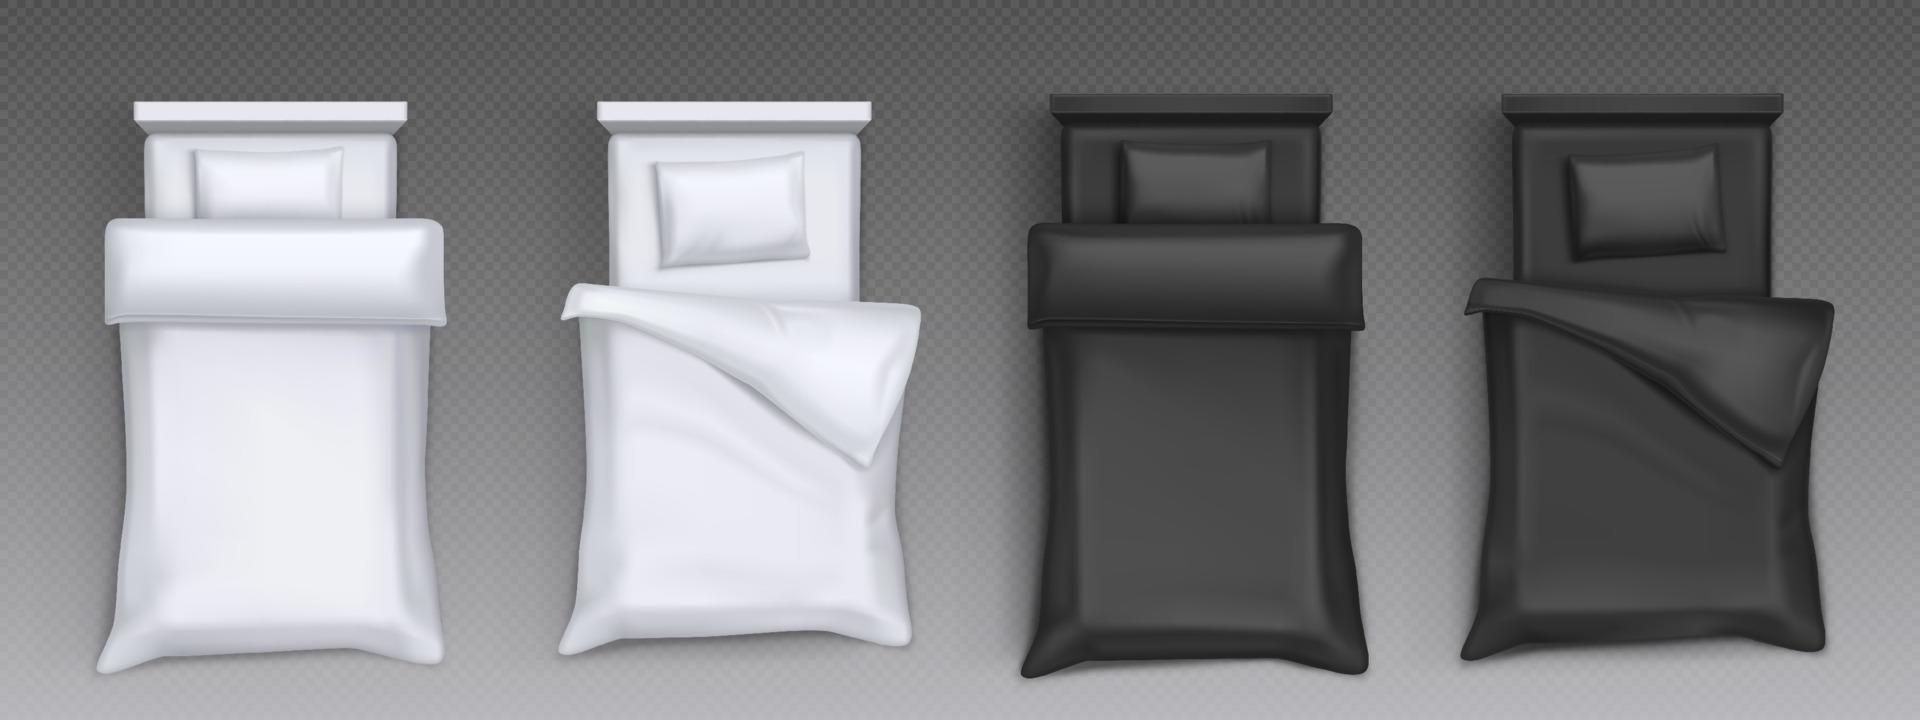 camas deshechas con sábanas blancas y negras vector